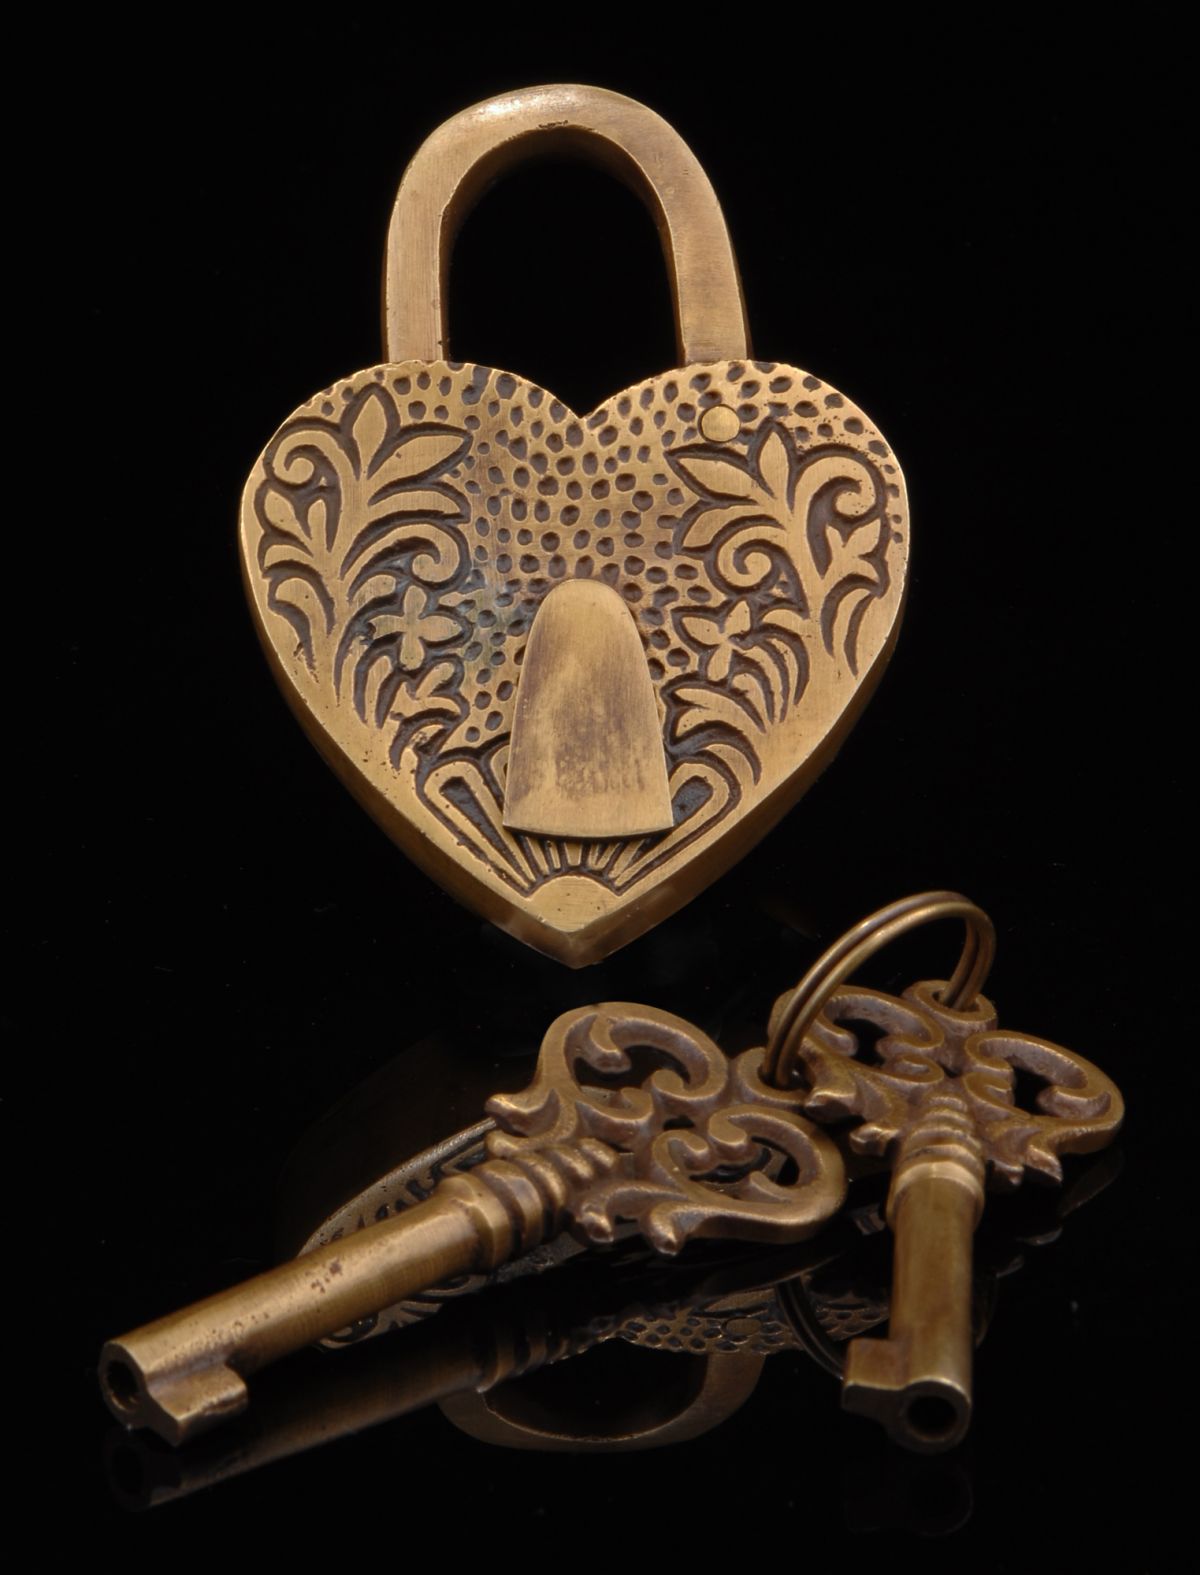 Large Vintage Style Ornate Love Heart Lock